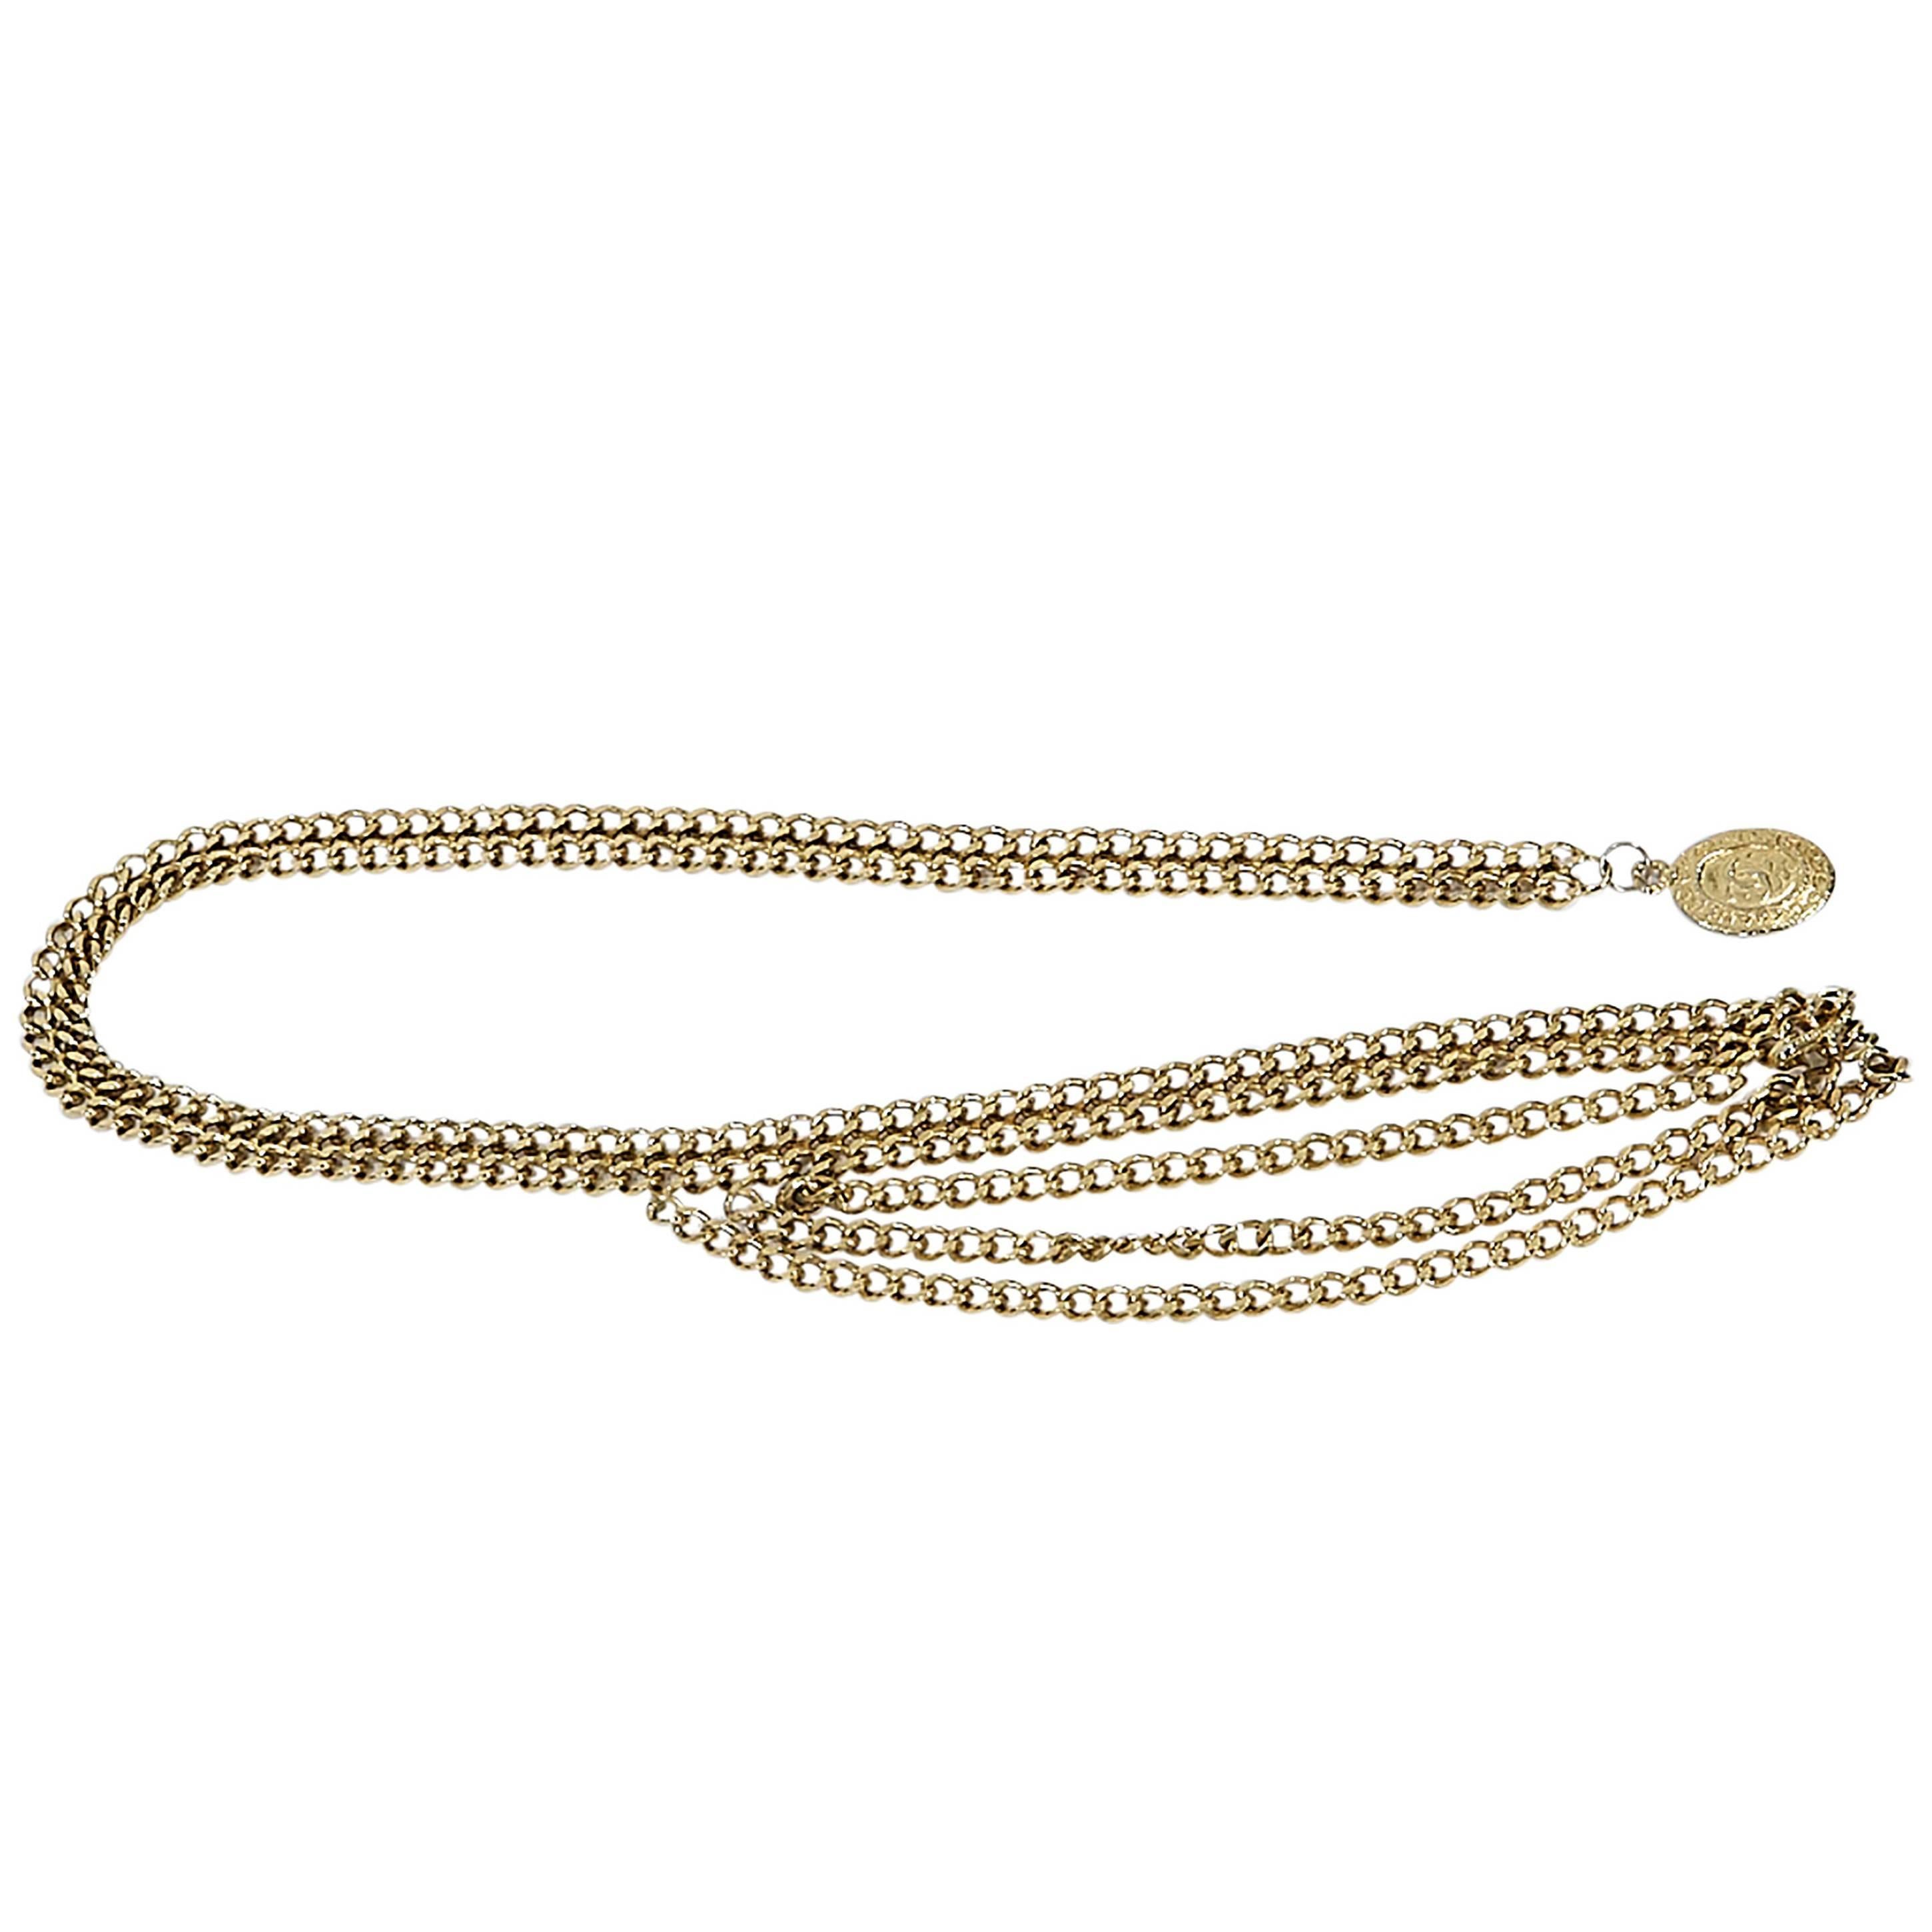 Goldtone Vintage Chanel Chain Belt